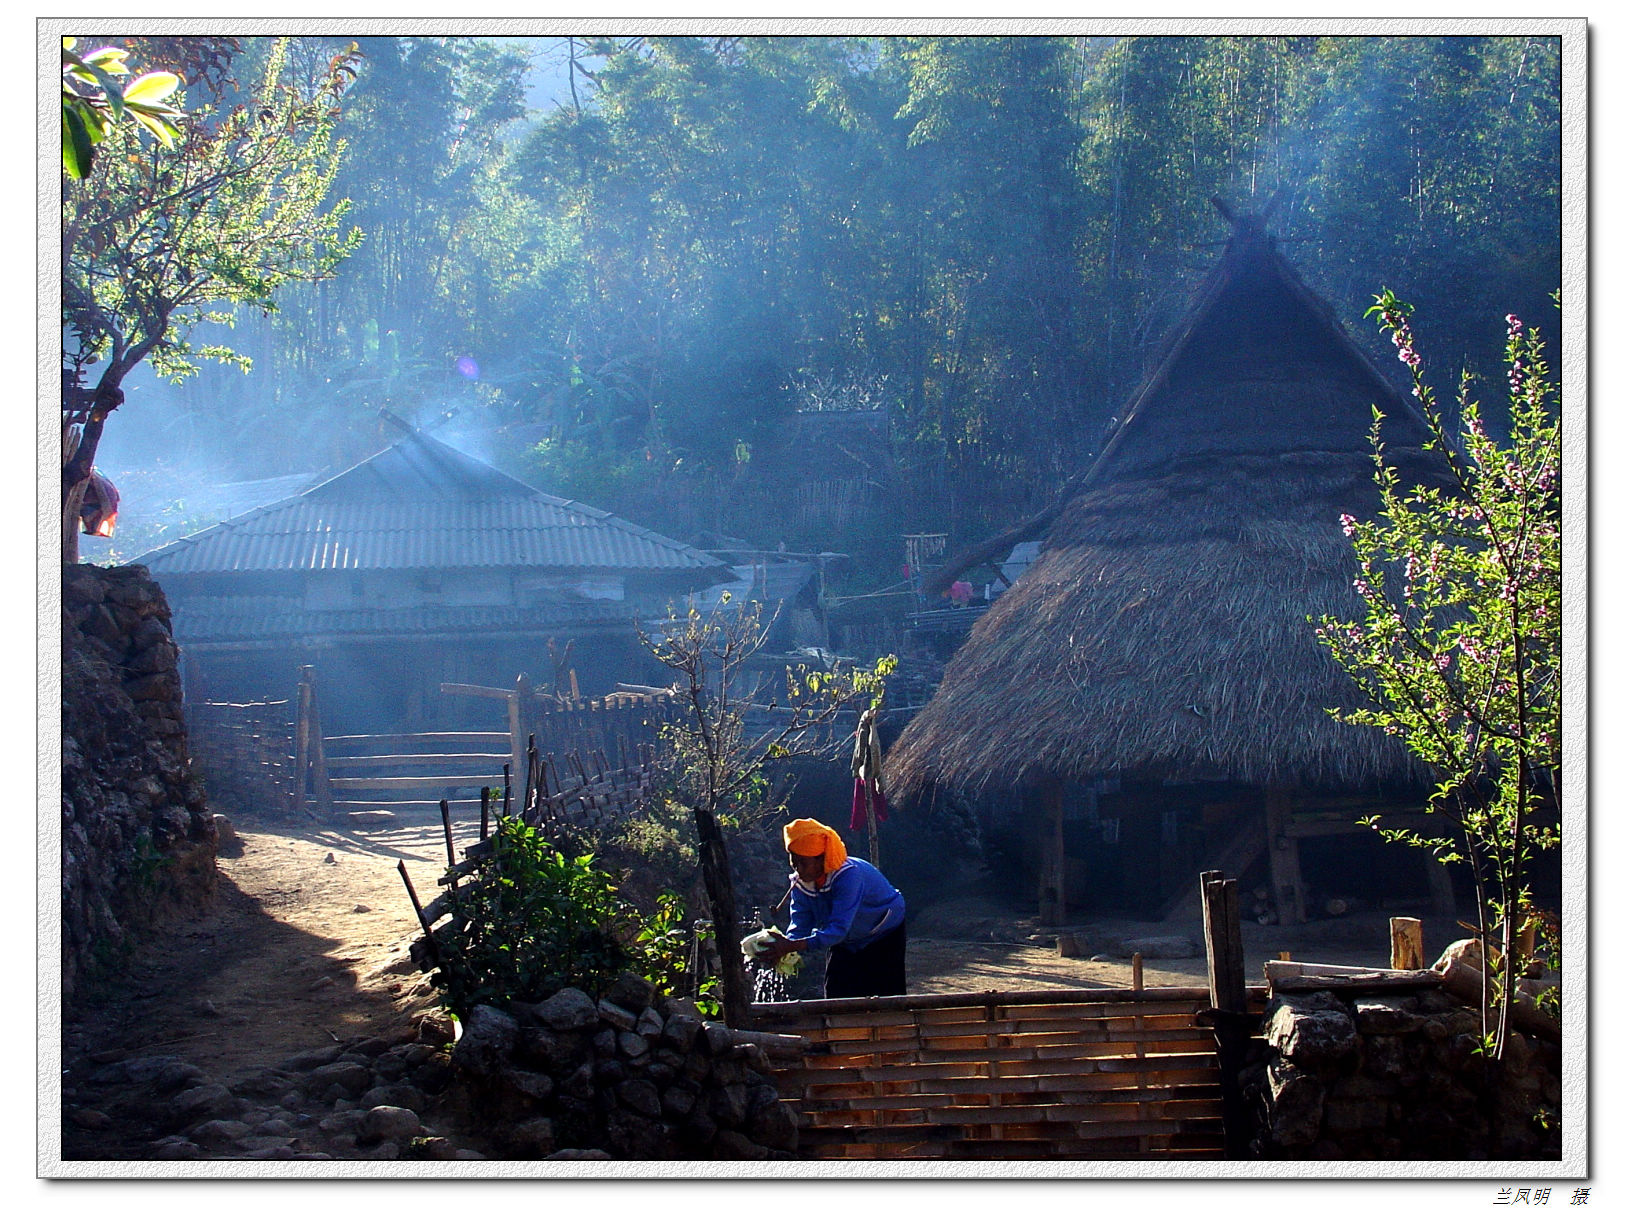 司莫拉佤族村 - ZDY ' LOVE | 关于摄影、旅行、户外、游记、攻略、感想、编程...